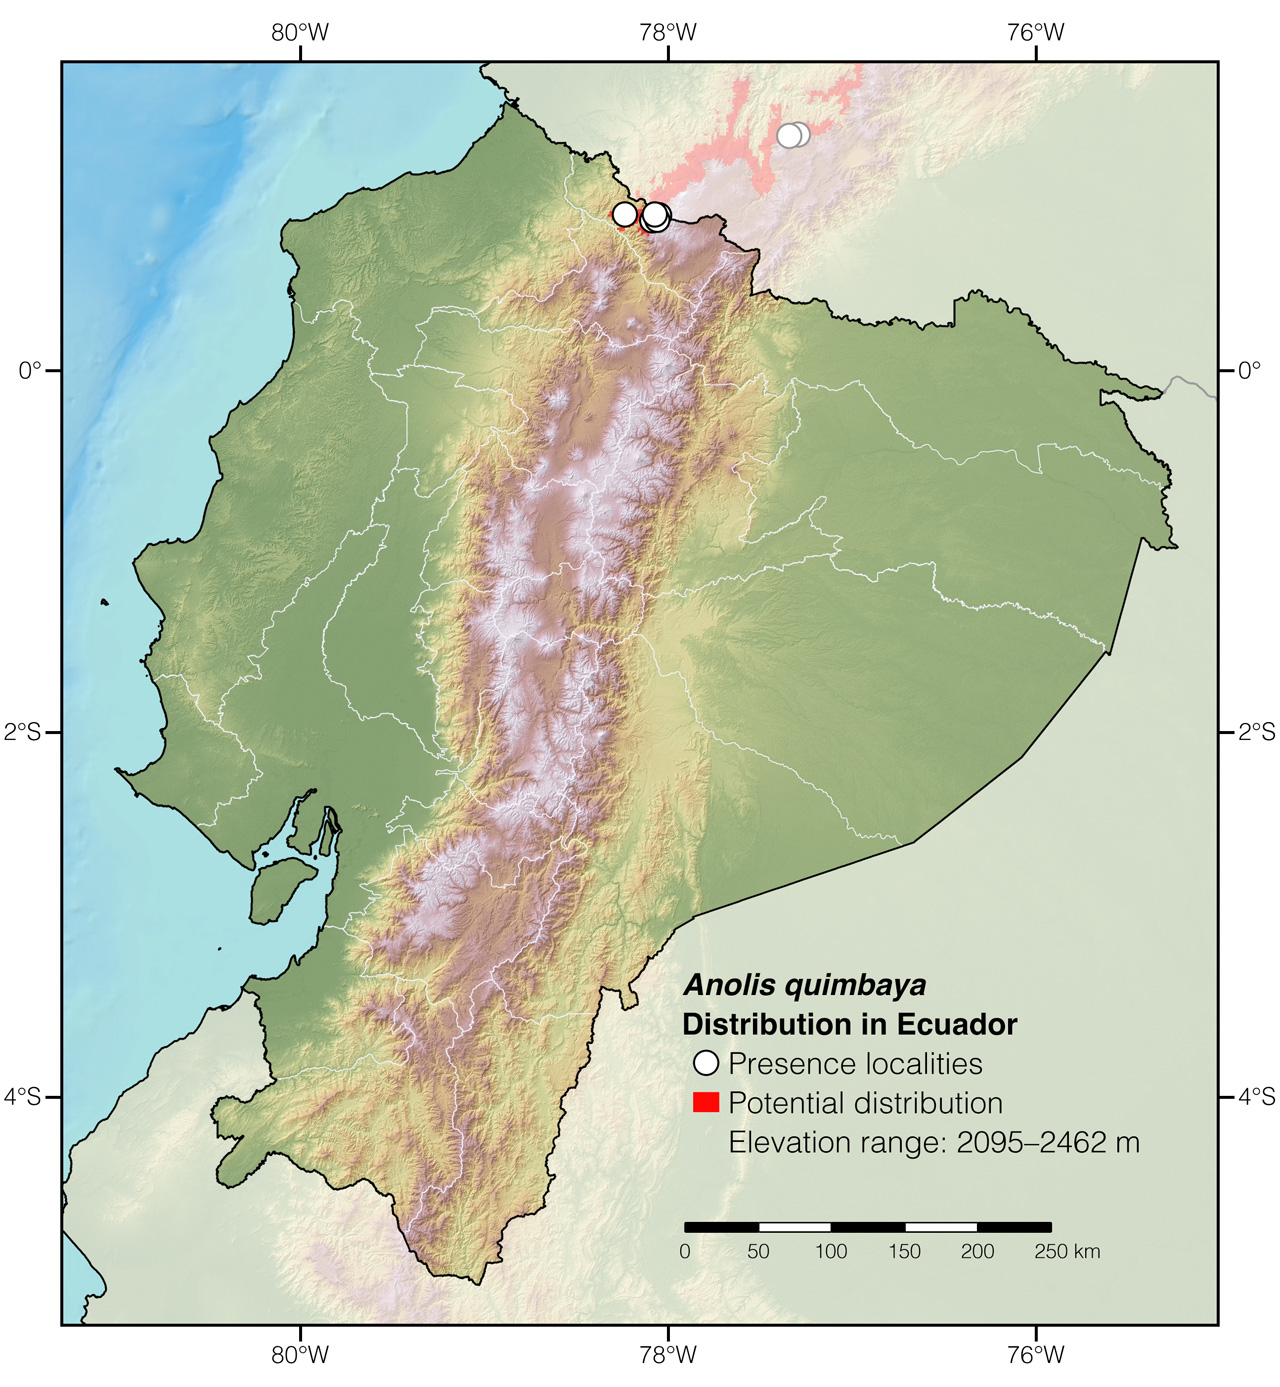 Distribution of Anolis quimbaya in Ecuador